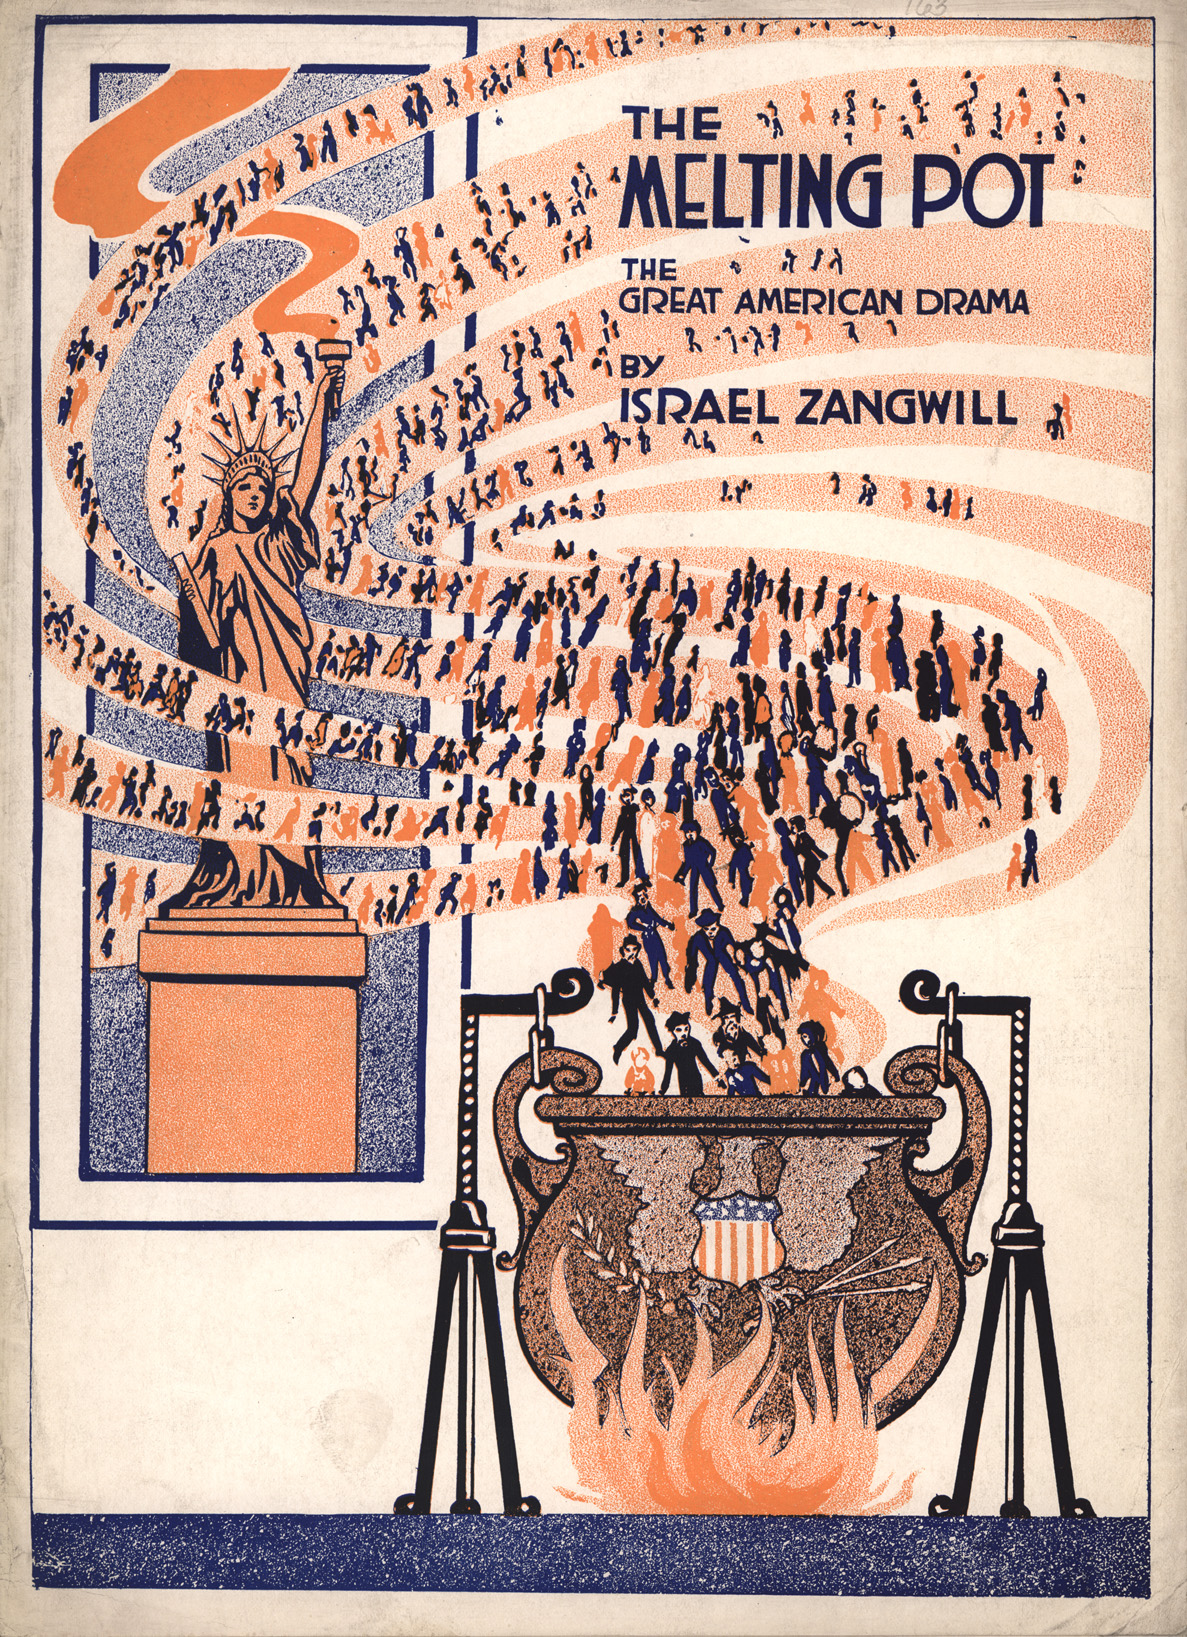 The Melting pot (Zanvill, 1908)